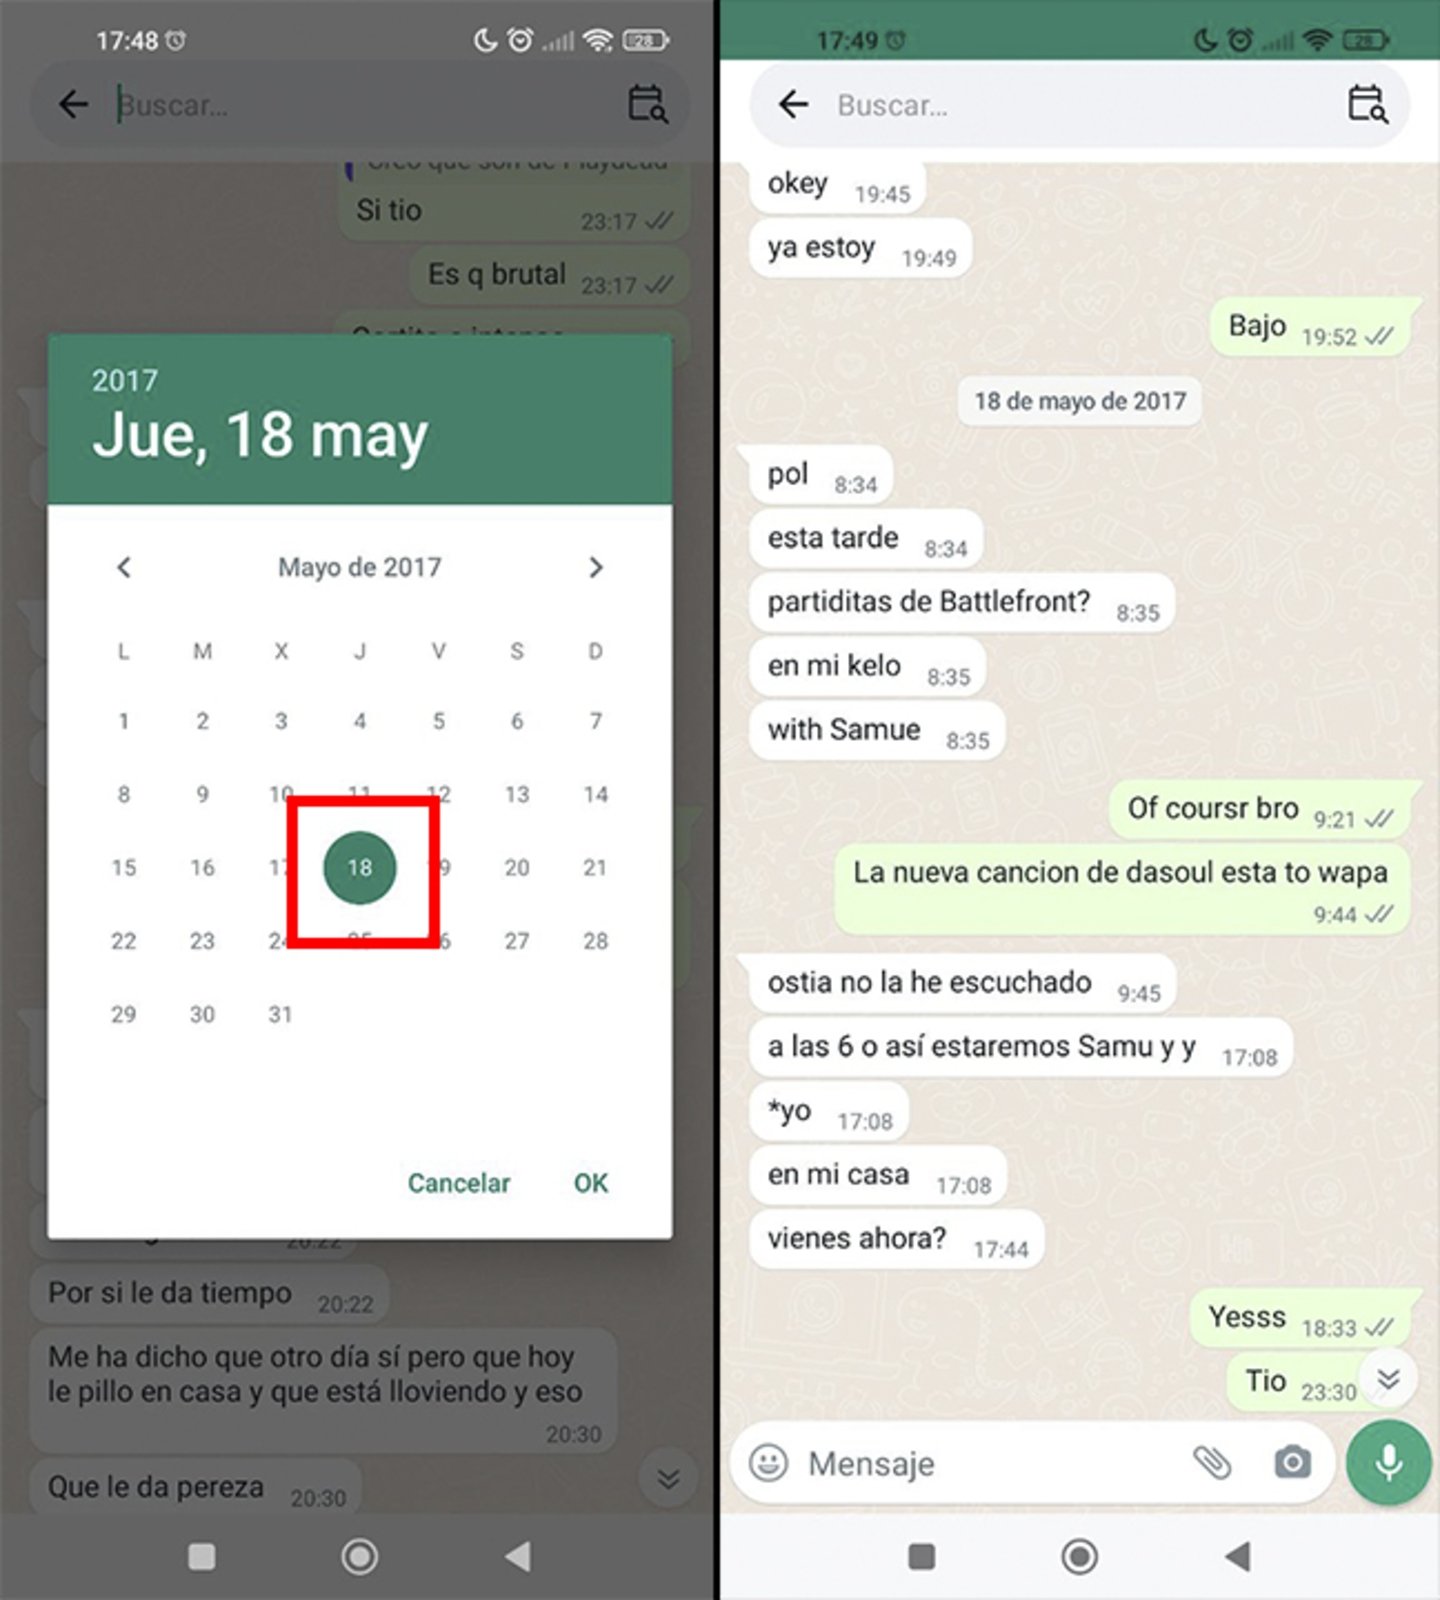 Las búsquedas de WhatsApp mejoran: ahora puedes encontrar mensajes por fecha